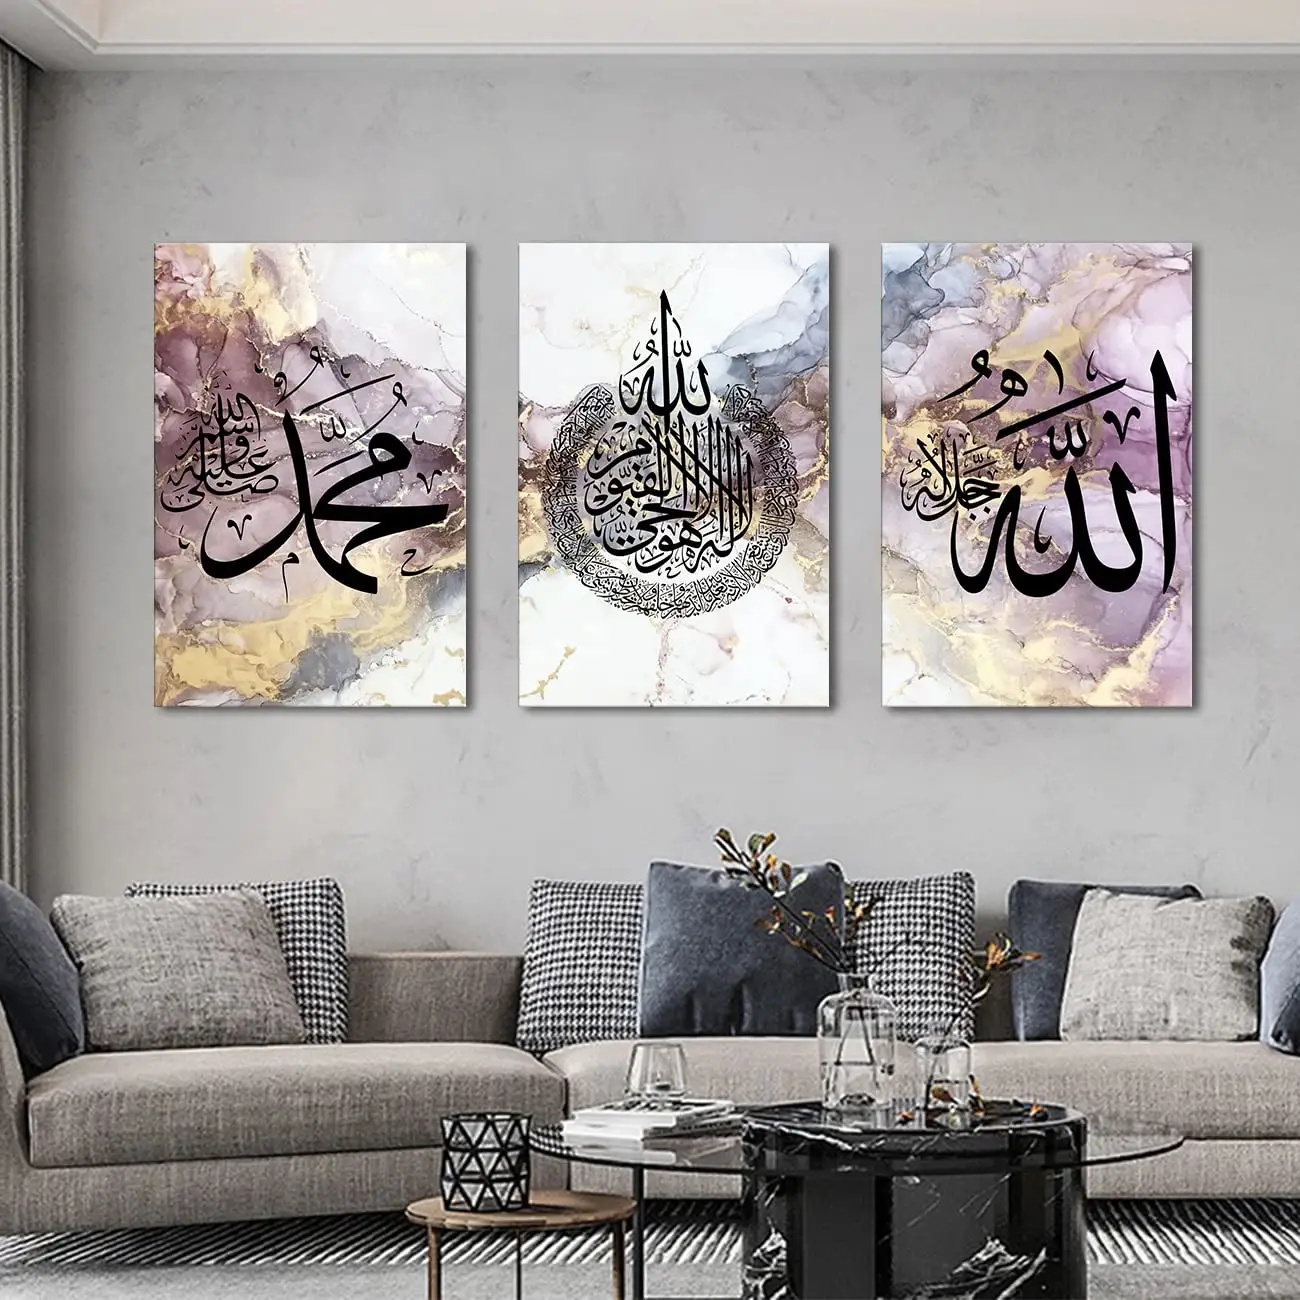 Islamische Leinwand Wand kunst 3 Stück Muhammad Bild druckt arabische Kalligraphie muslimische Kunst Poster Home Decor